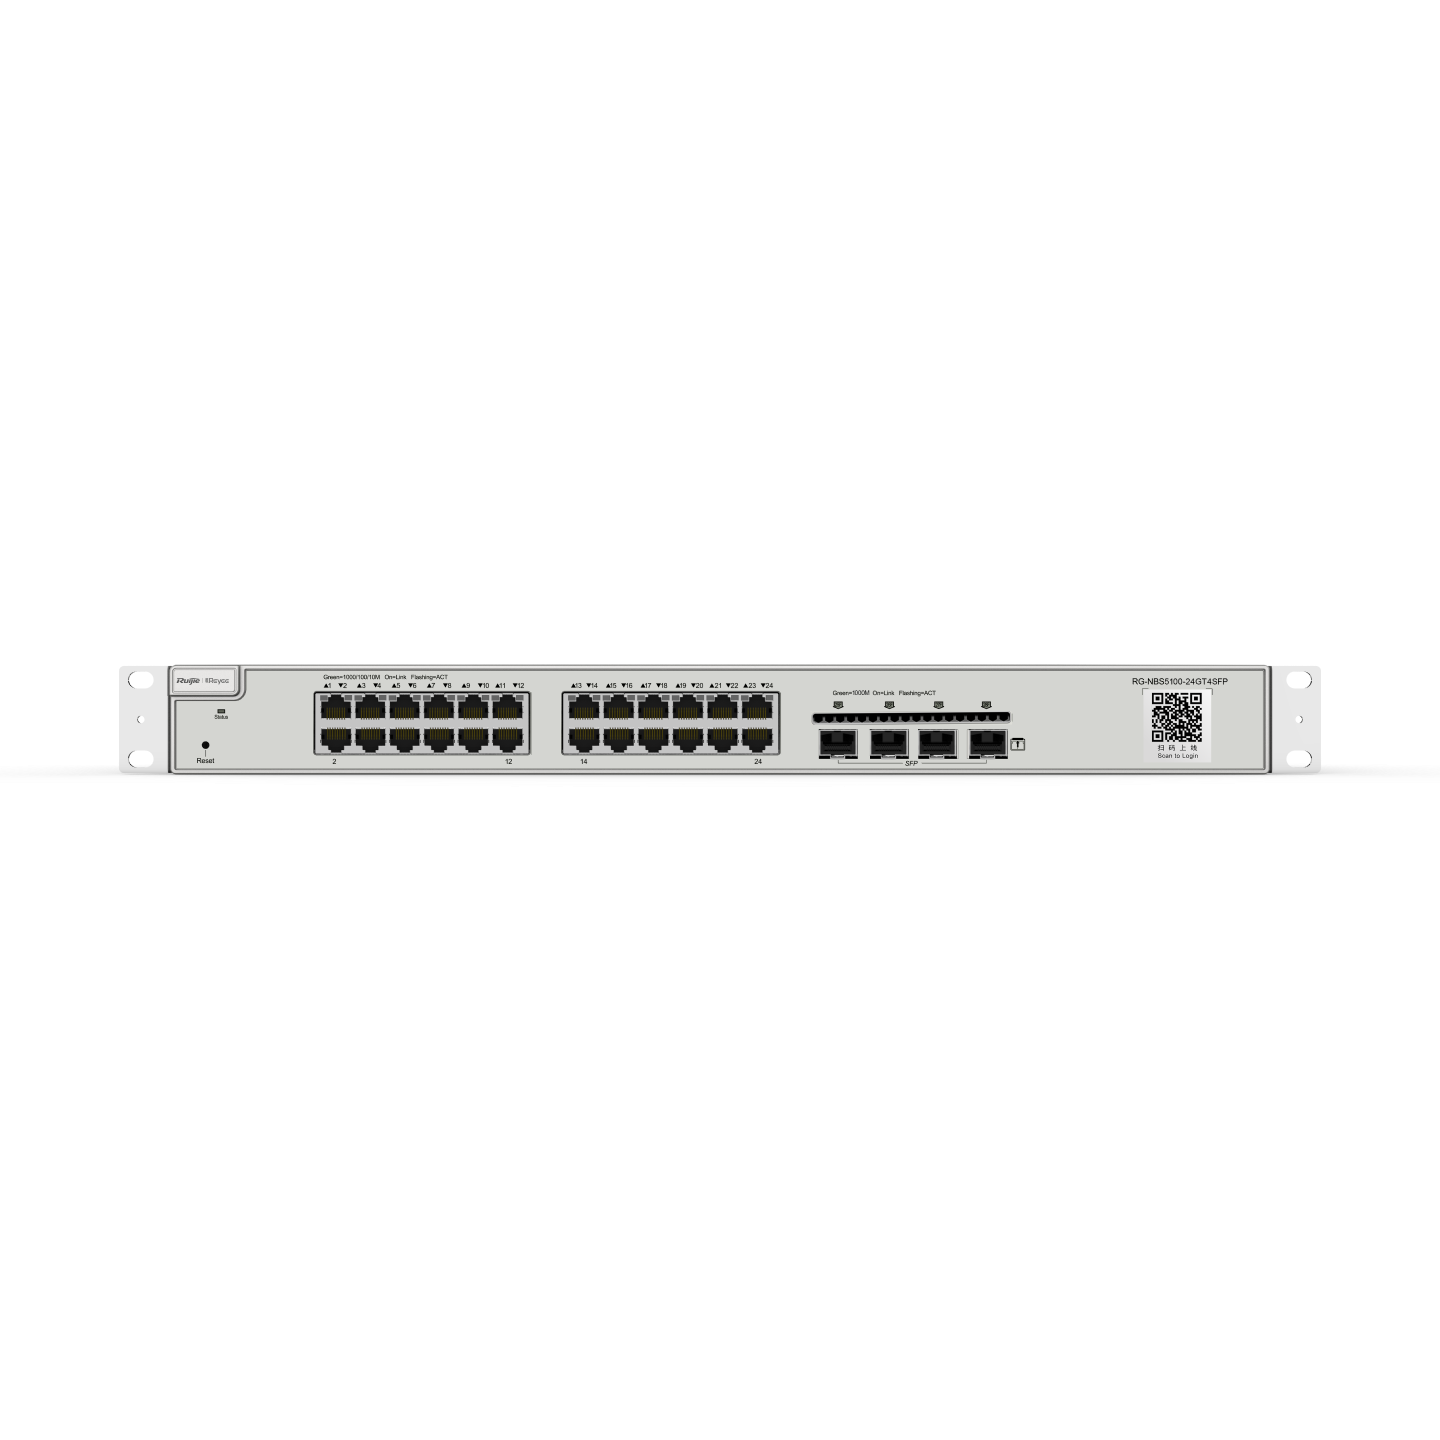 Ruijie Reyee RG-NBS5100-24GT4SFP, 28-Port Gigabit Layer 3 Non-PoE Switch